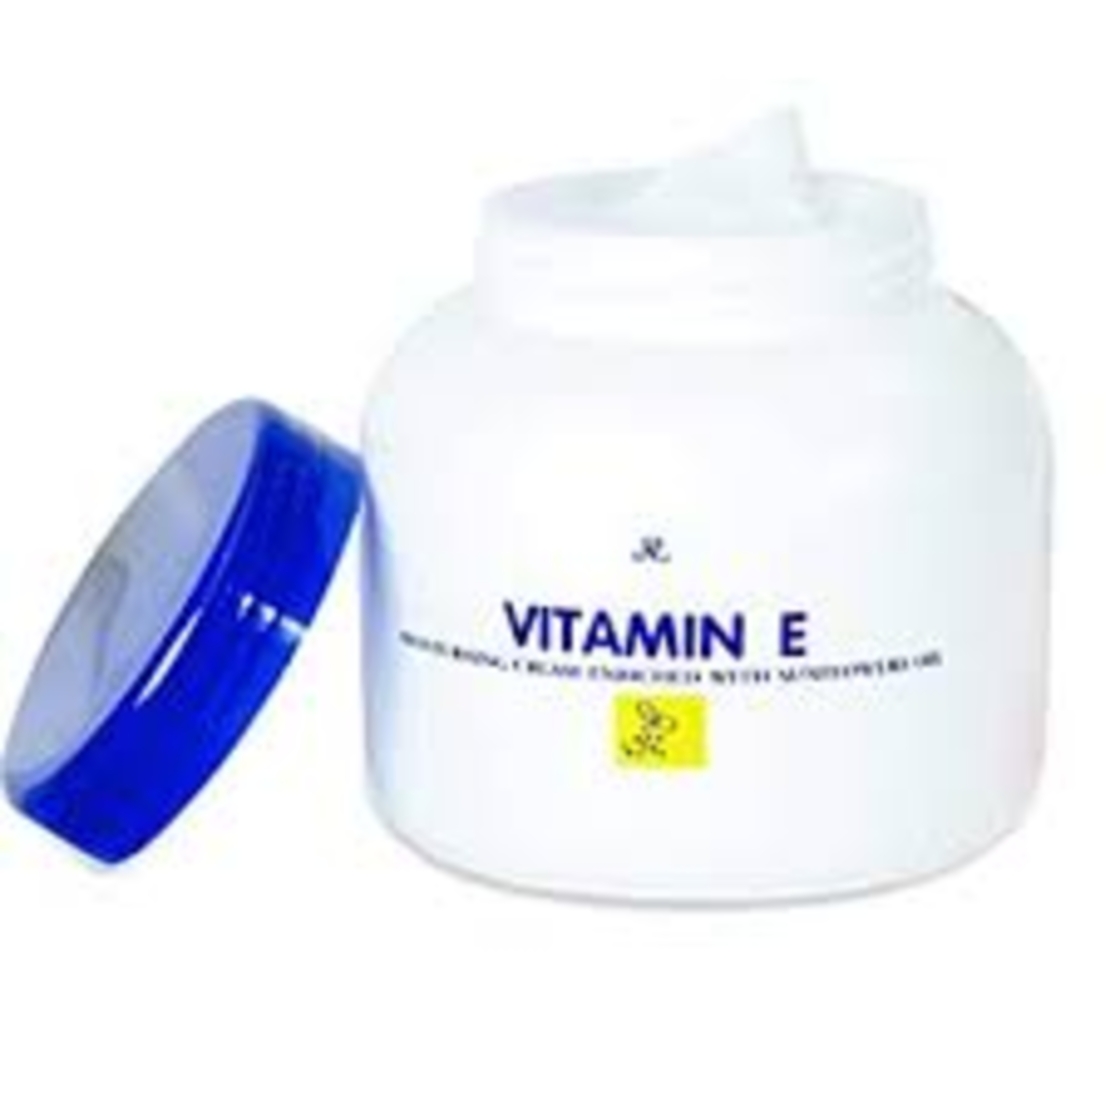 Vitamin E - Moisturising Cream 200g